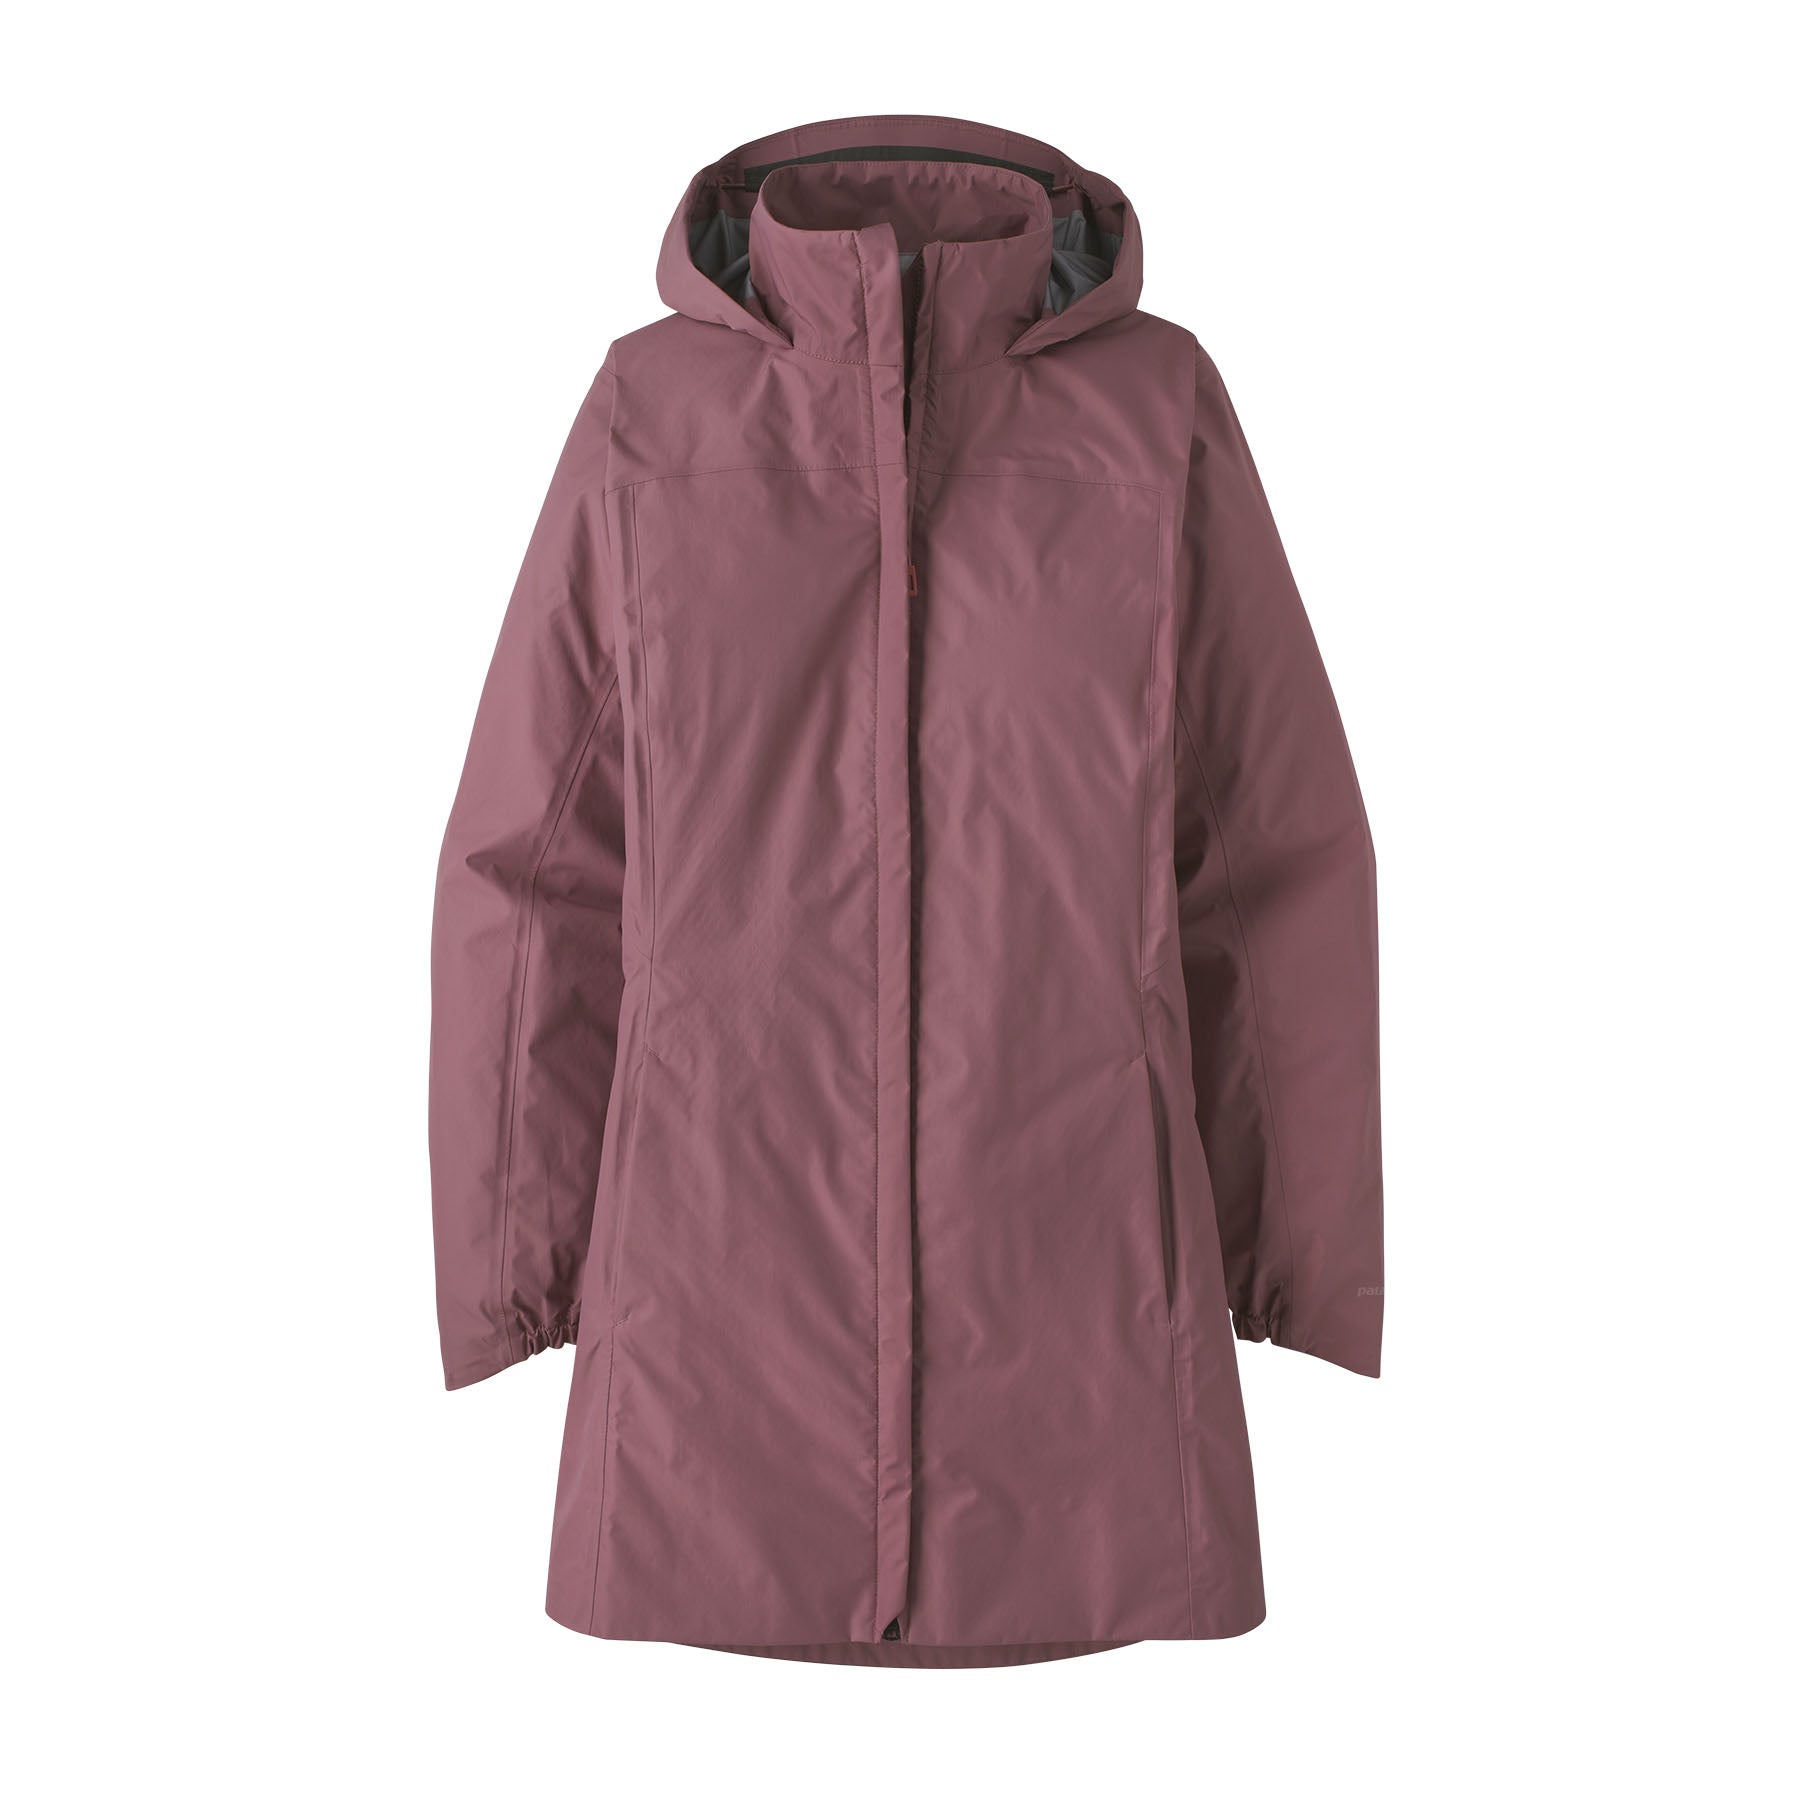 Patagonia Women's Torrentshell 3L Waterproof Jacket Black